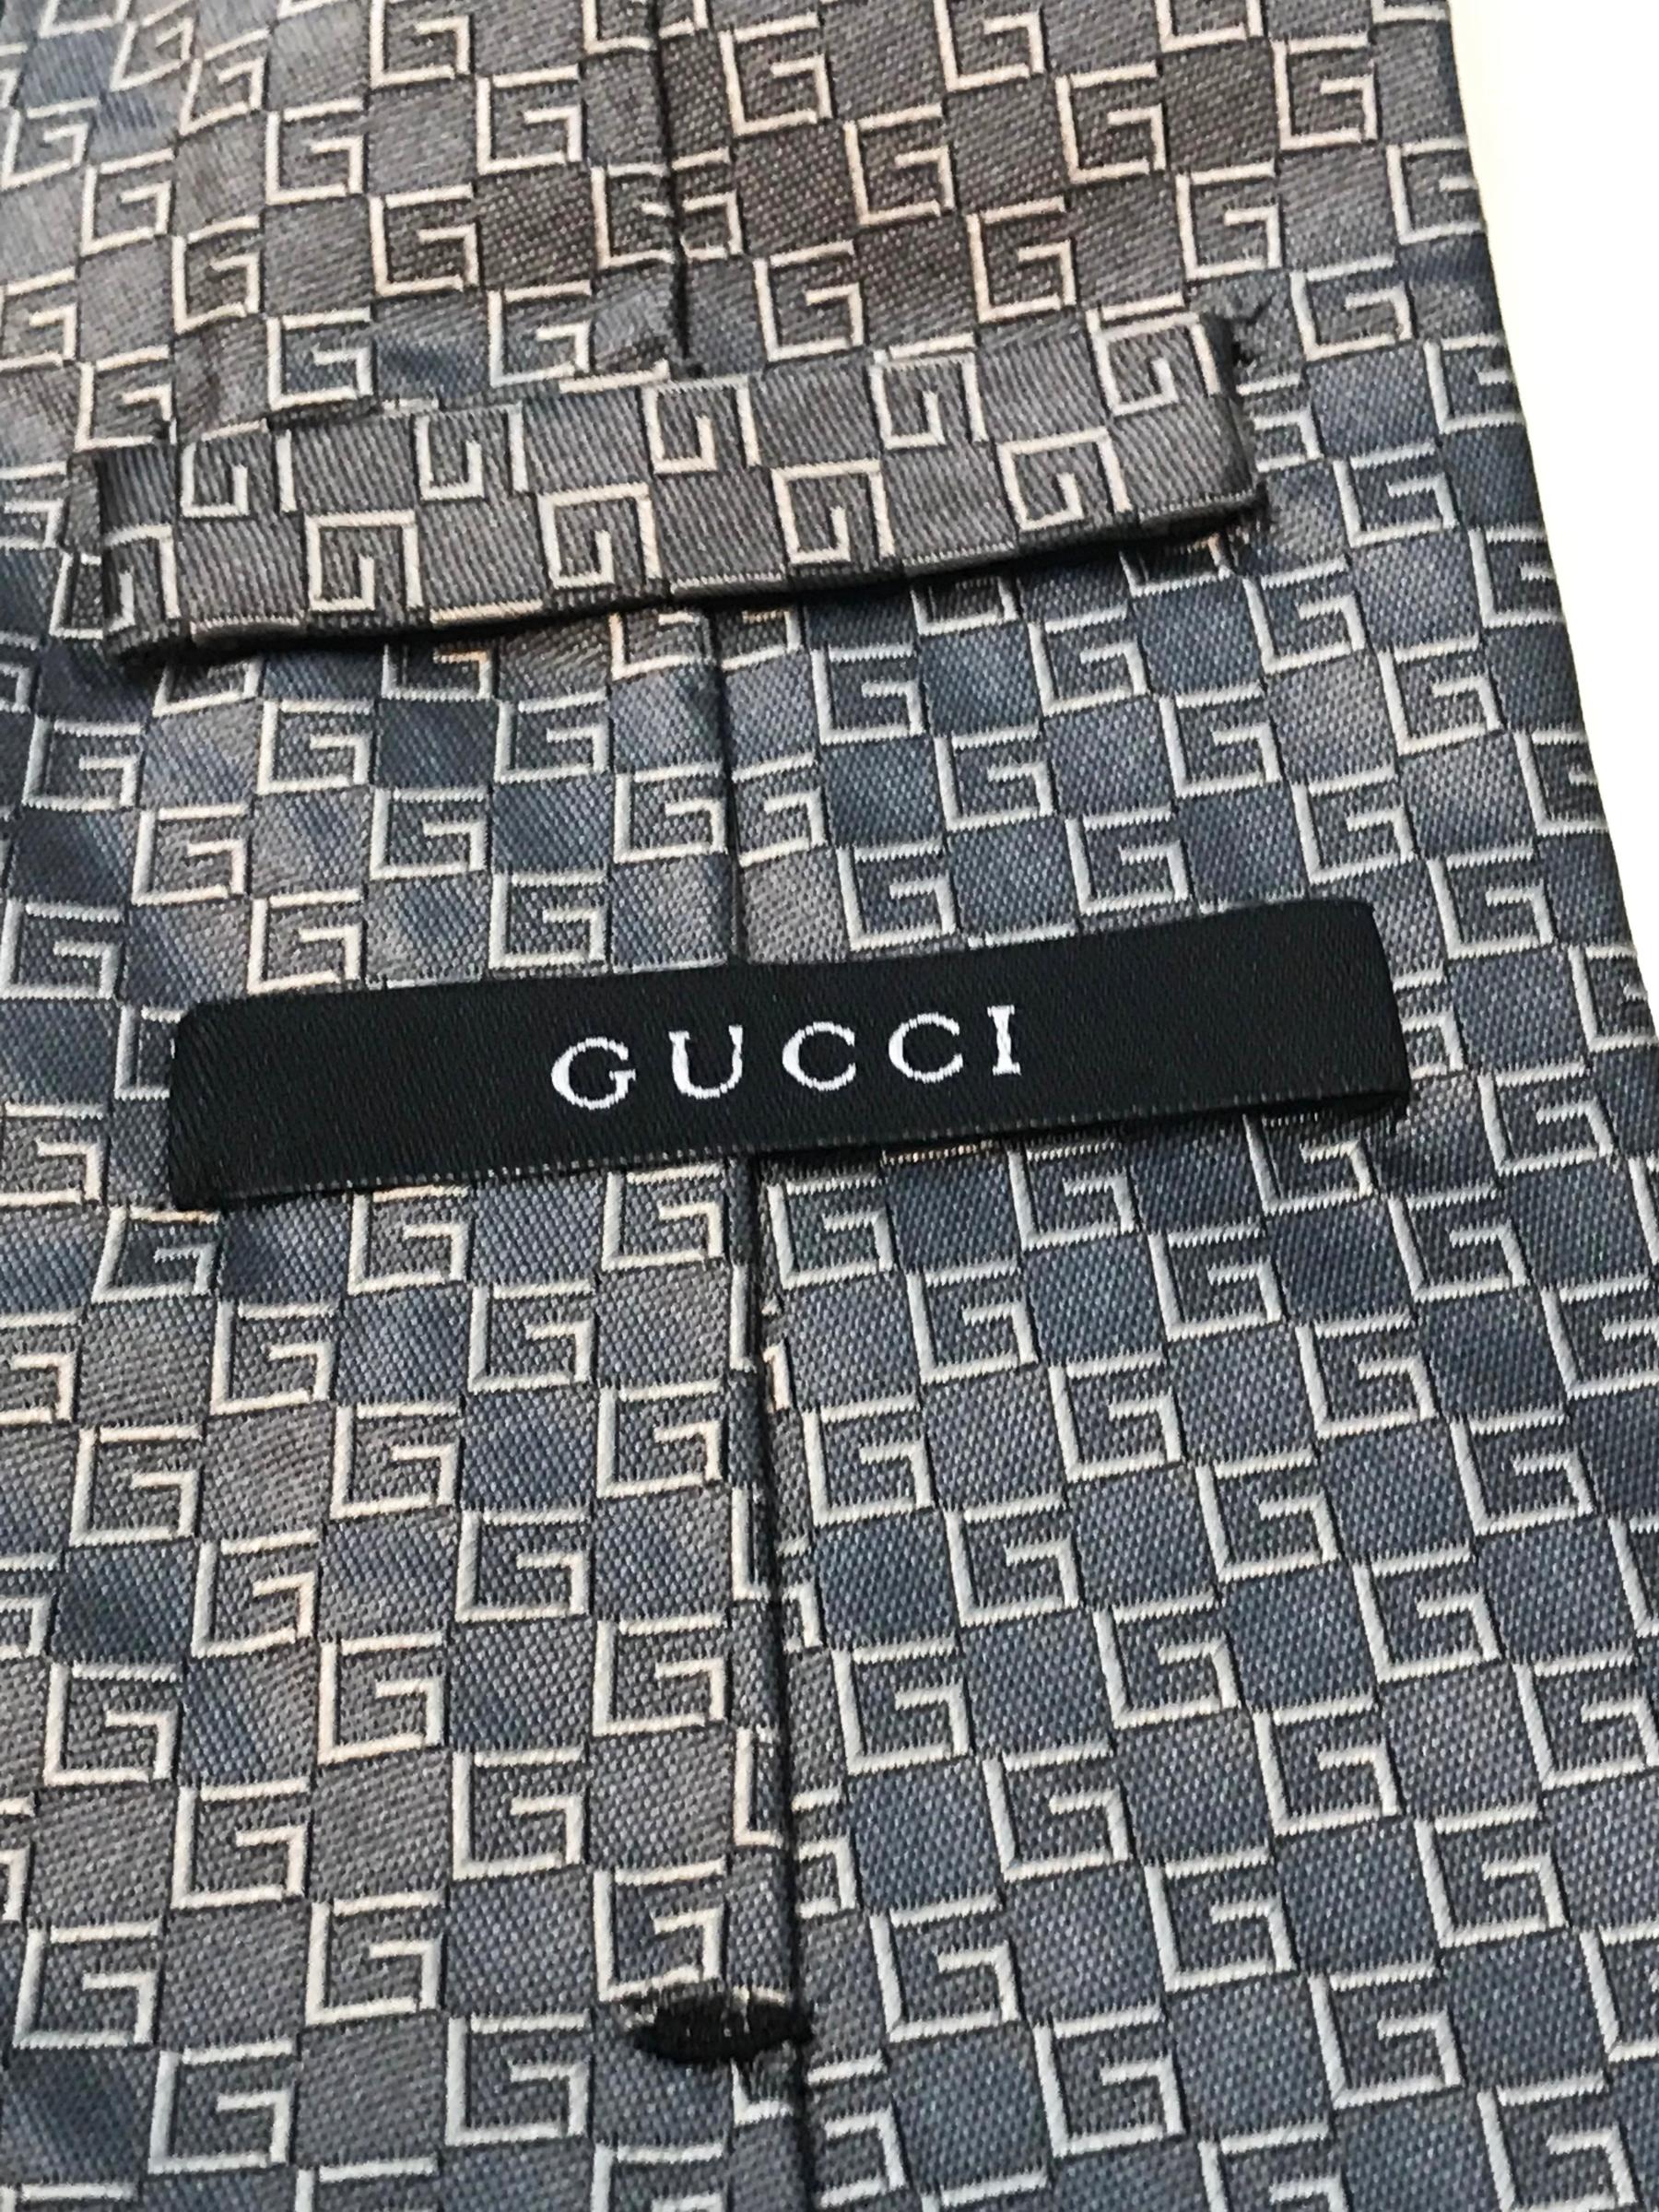 Men's Gucci silver tie. For Sale